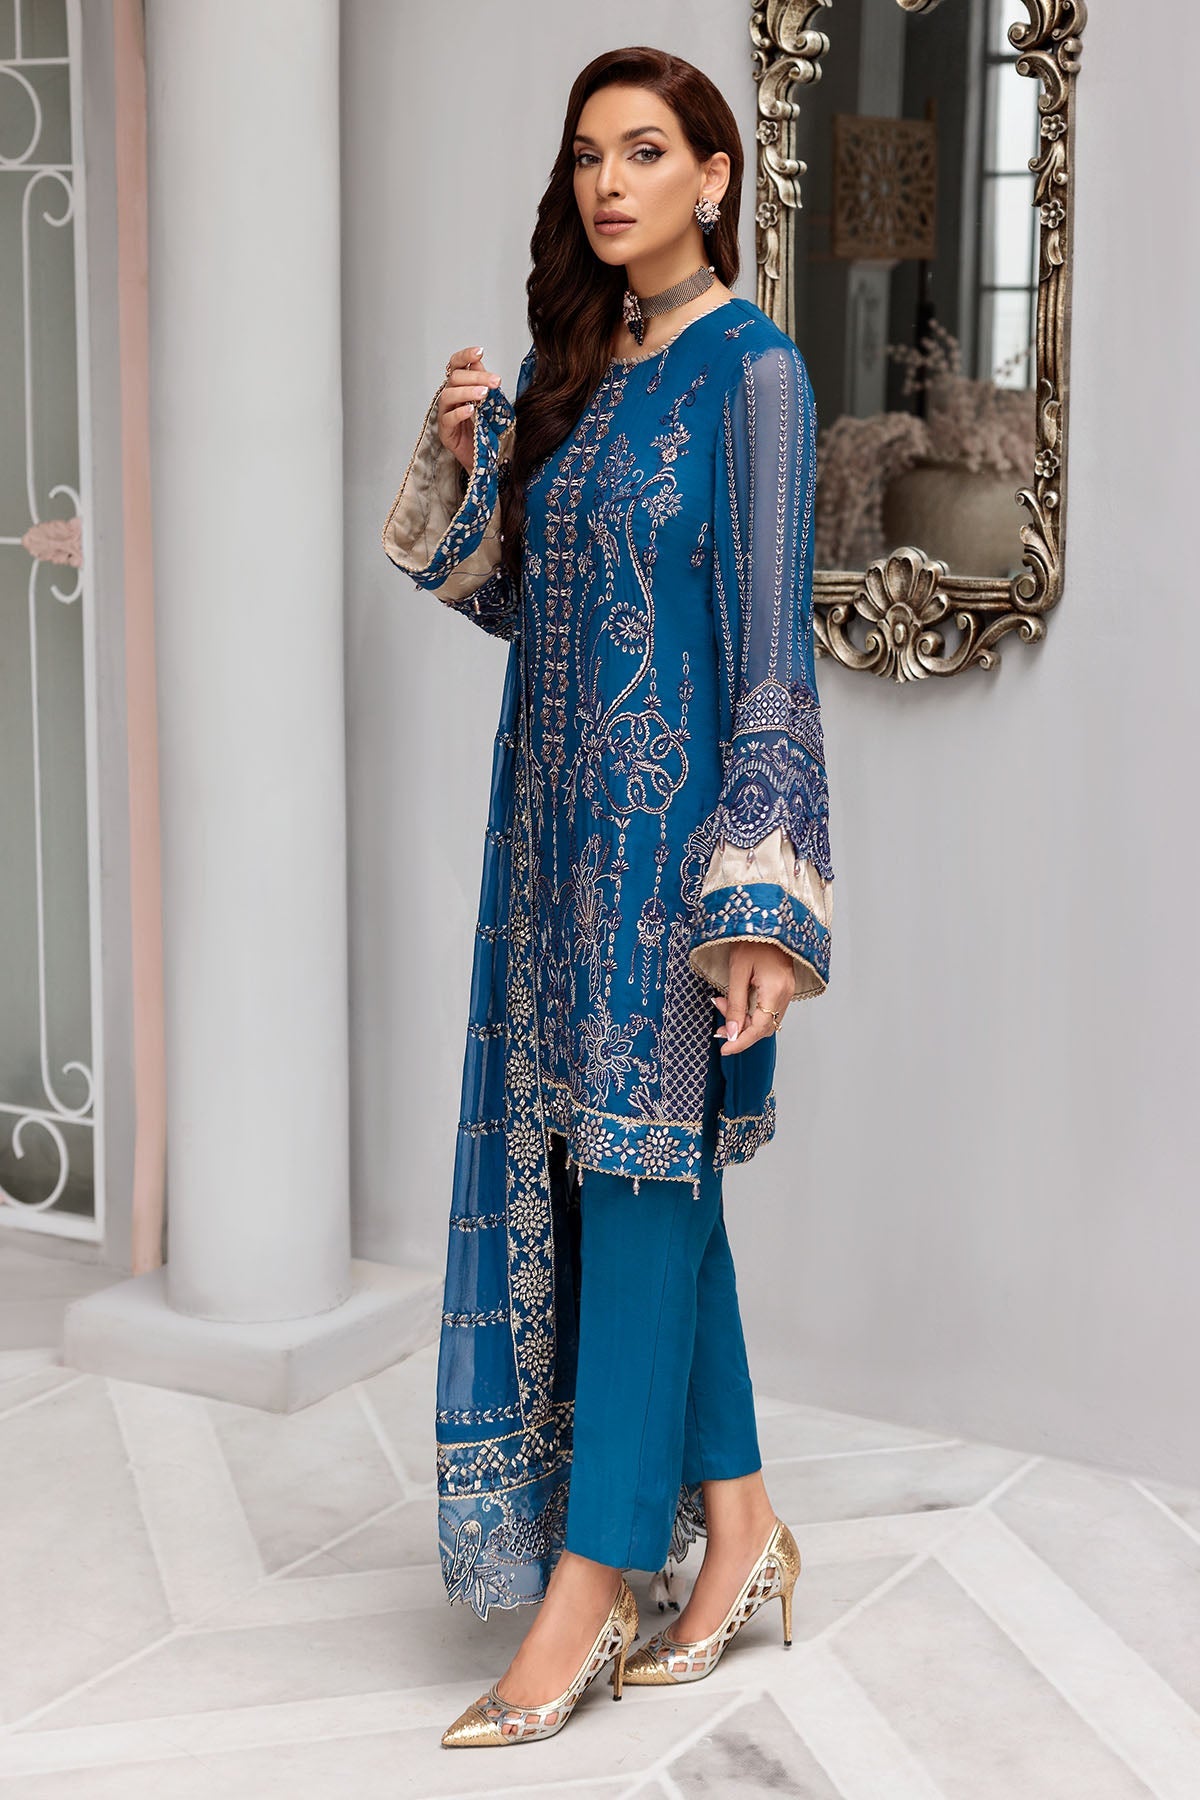 Blue Pakistani Salwar Kameez in Premium Chiffon Fabric – Nameera by Farooq